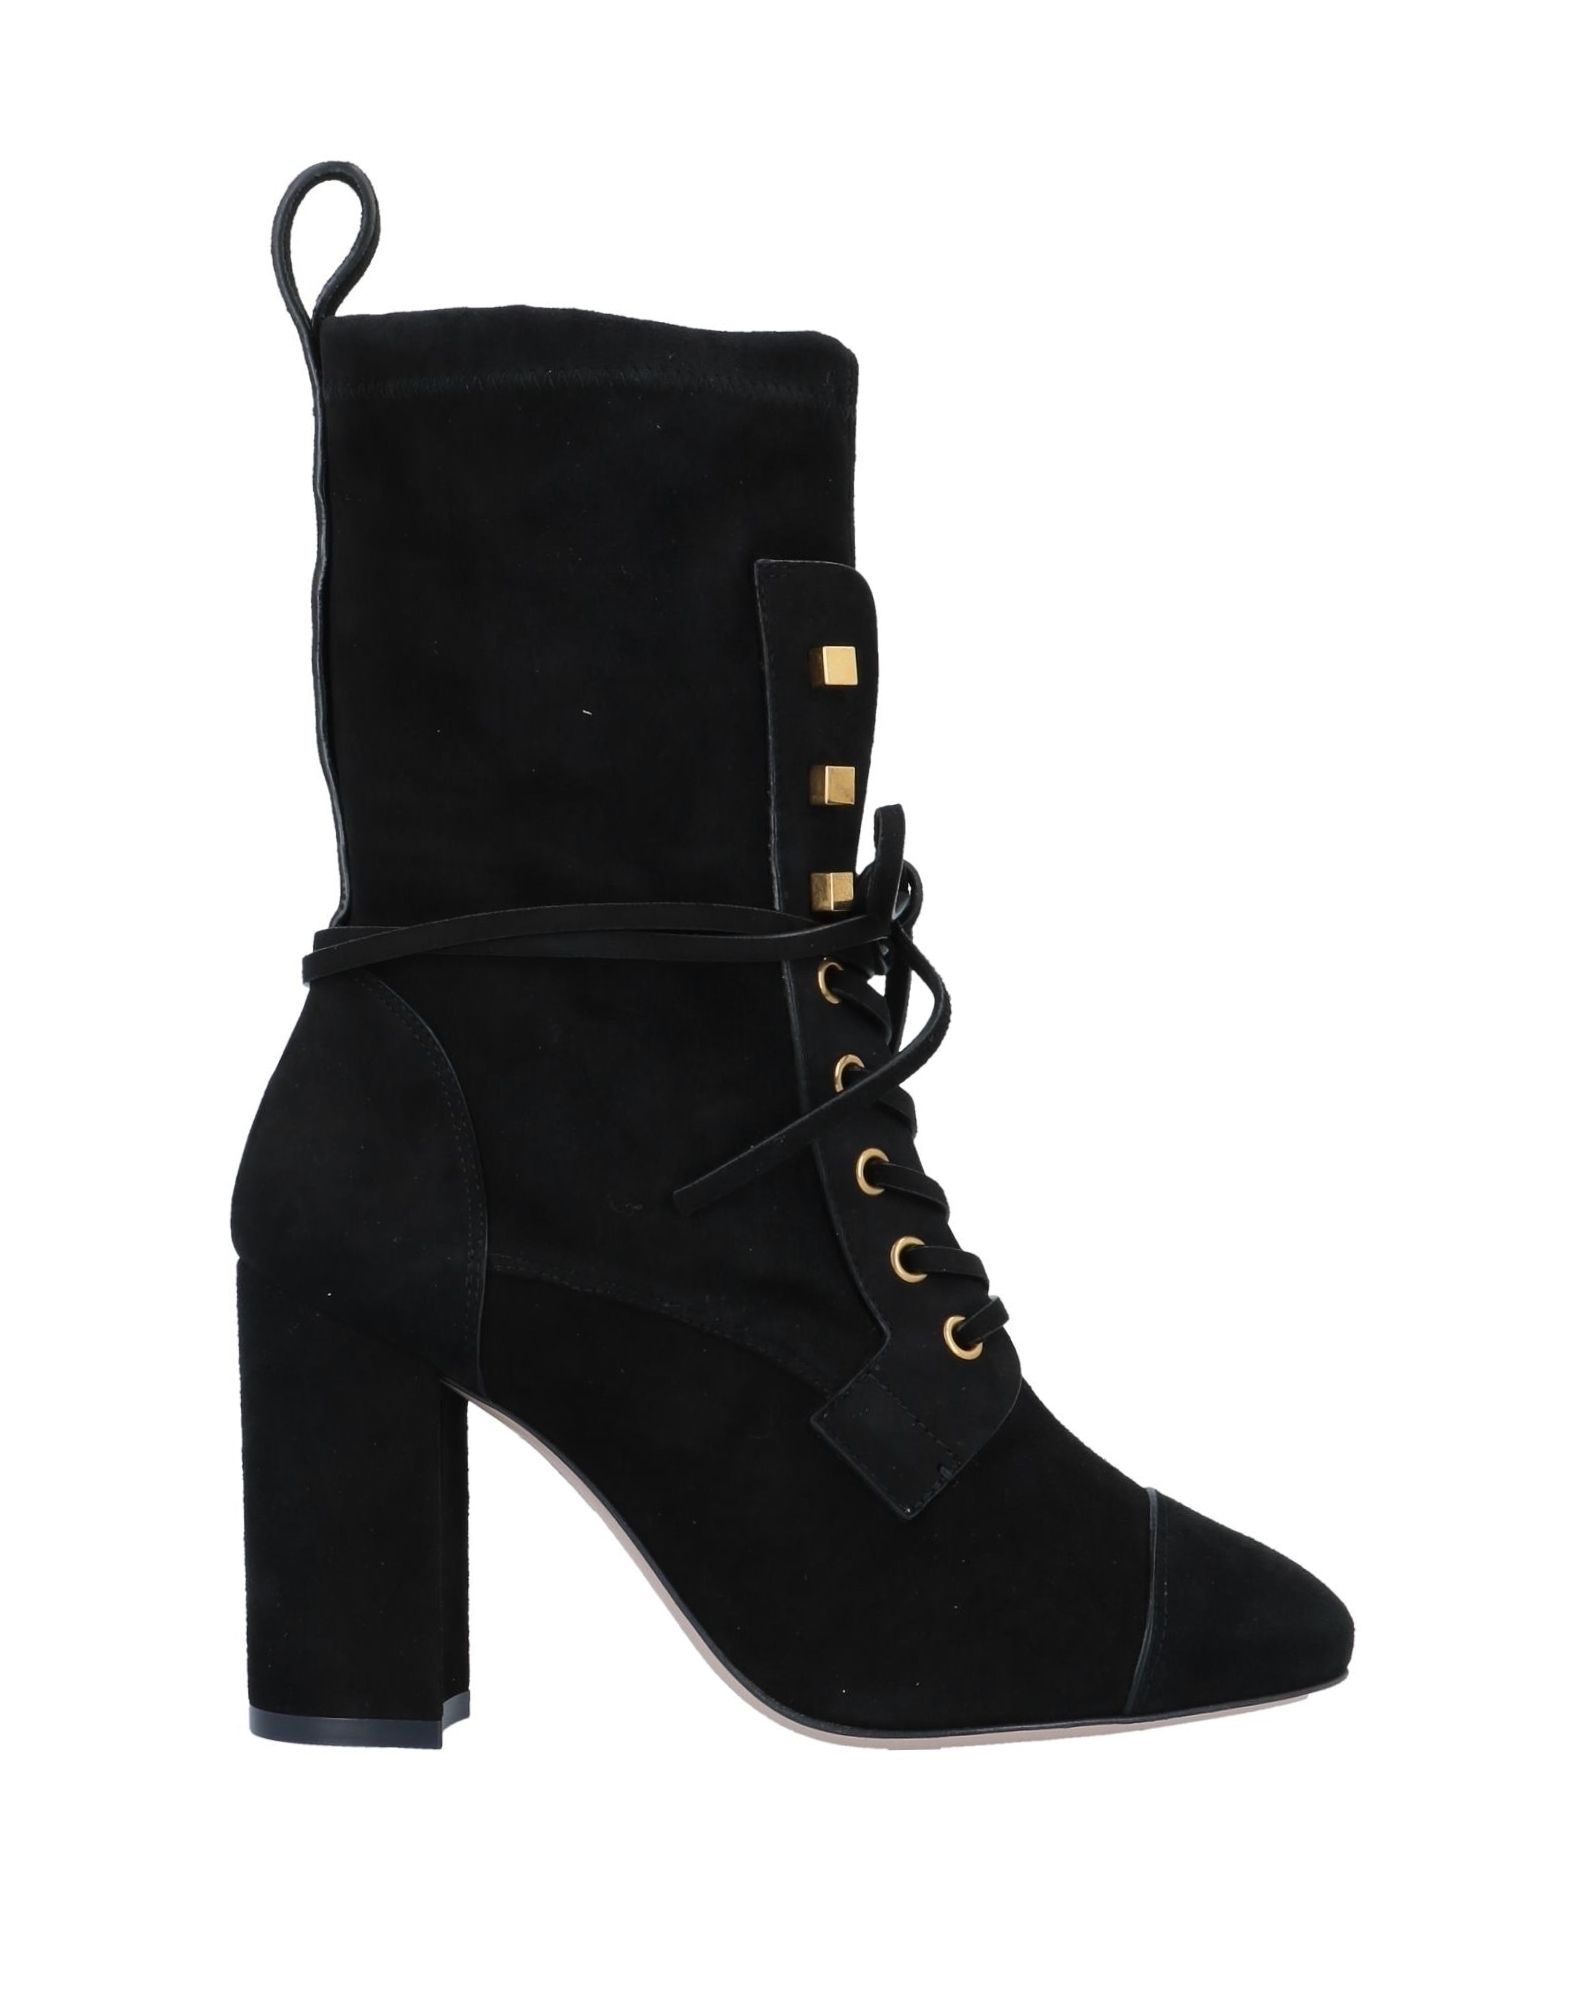 Shop Stuart Weitzman Woman Ankle Boots Black Size 7 Soft Leather